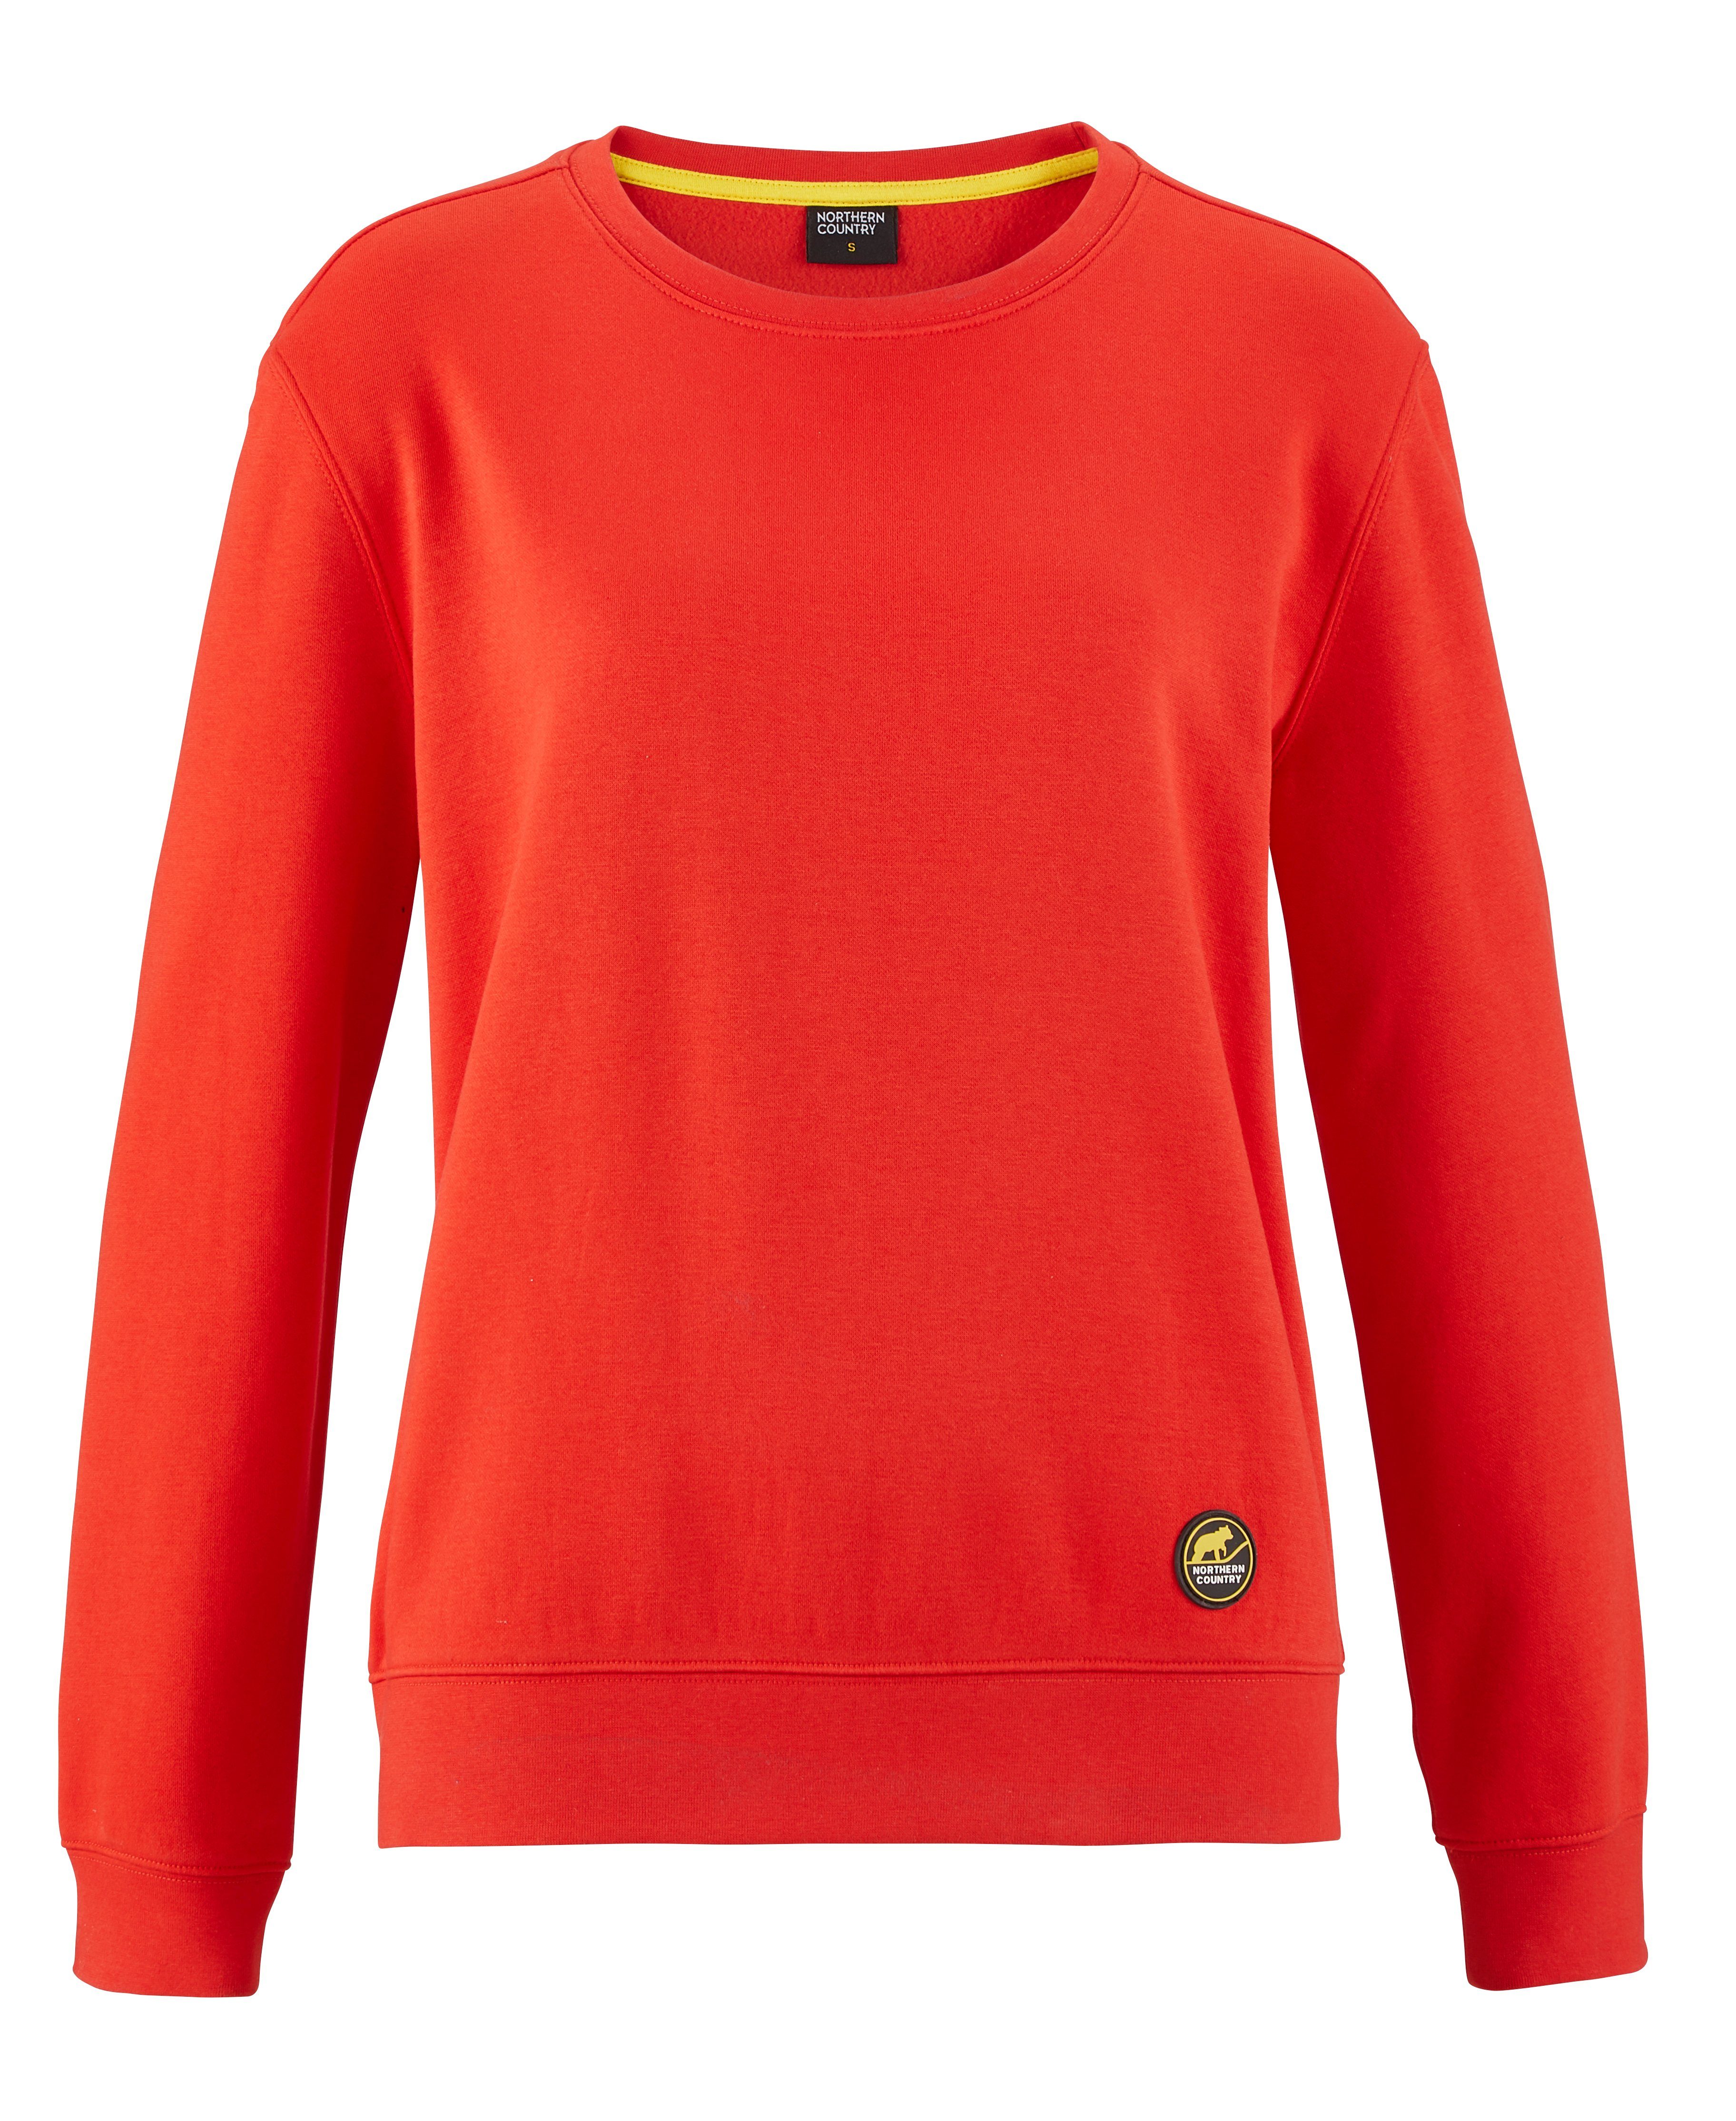 Northern Country Sweatshirt für Damen aus soften Baumwollmix, trägt sich locker und leicht Fiery Red | Sweatshirts